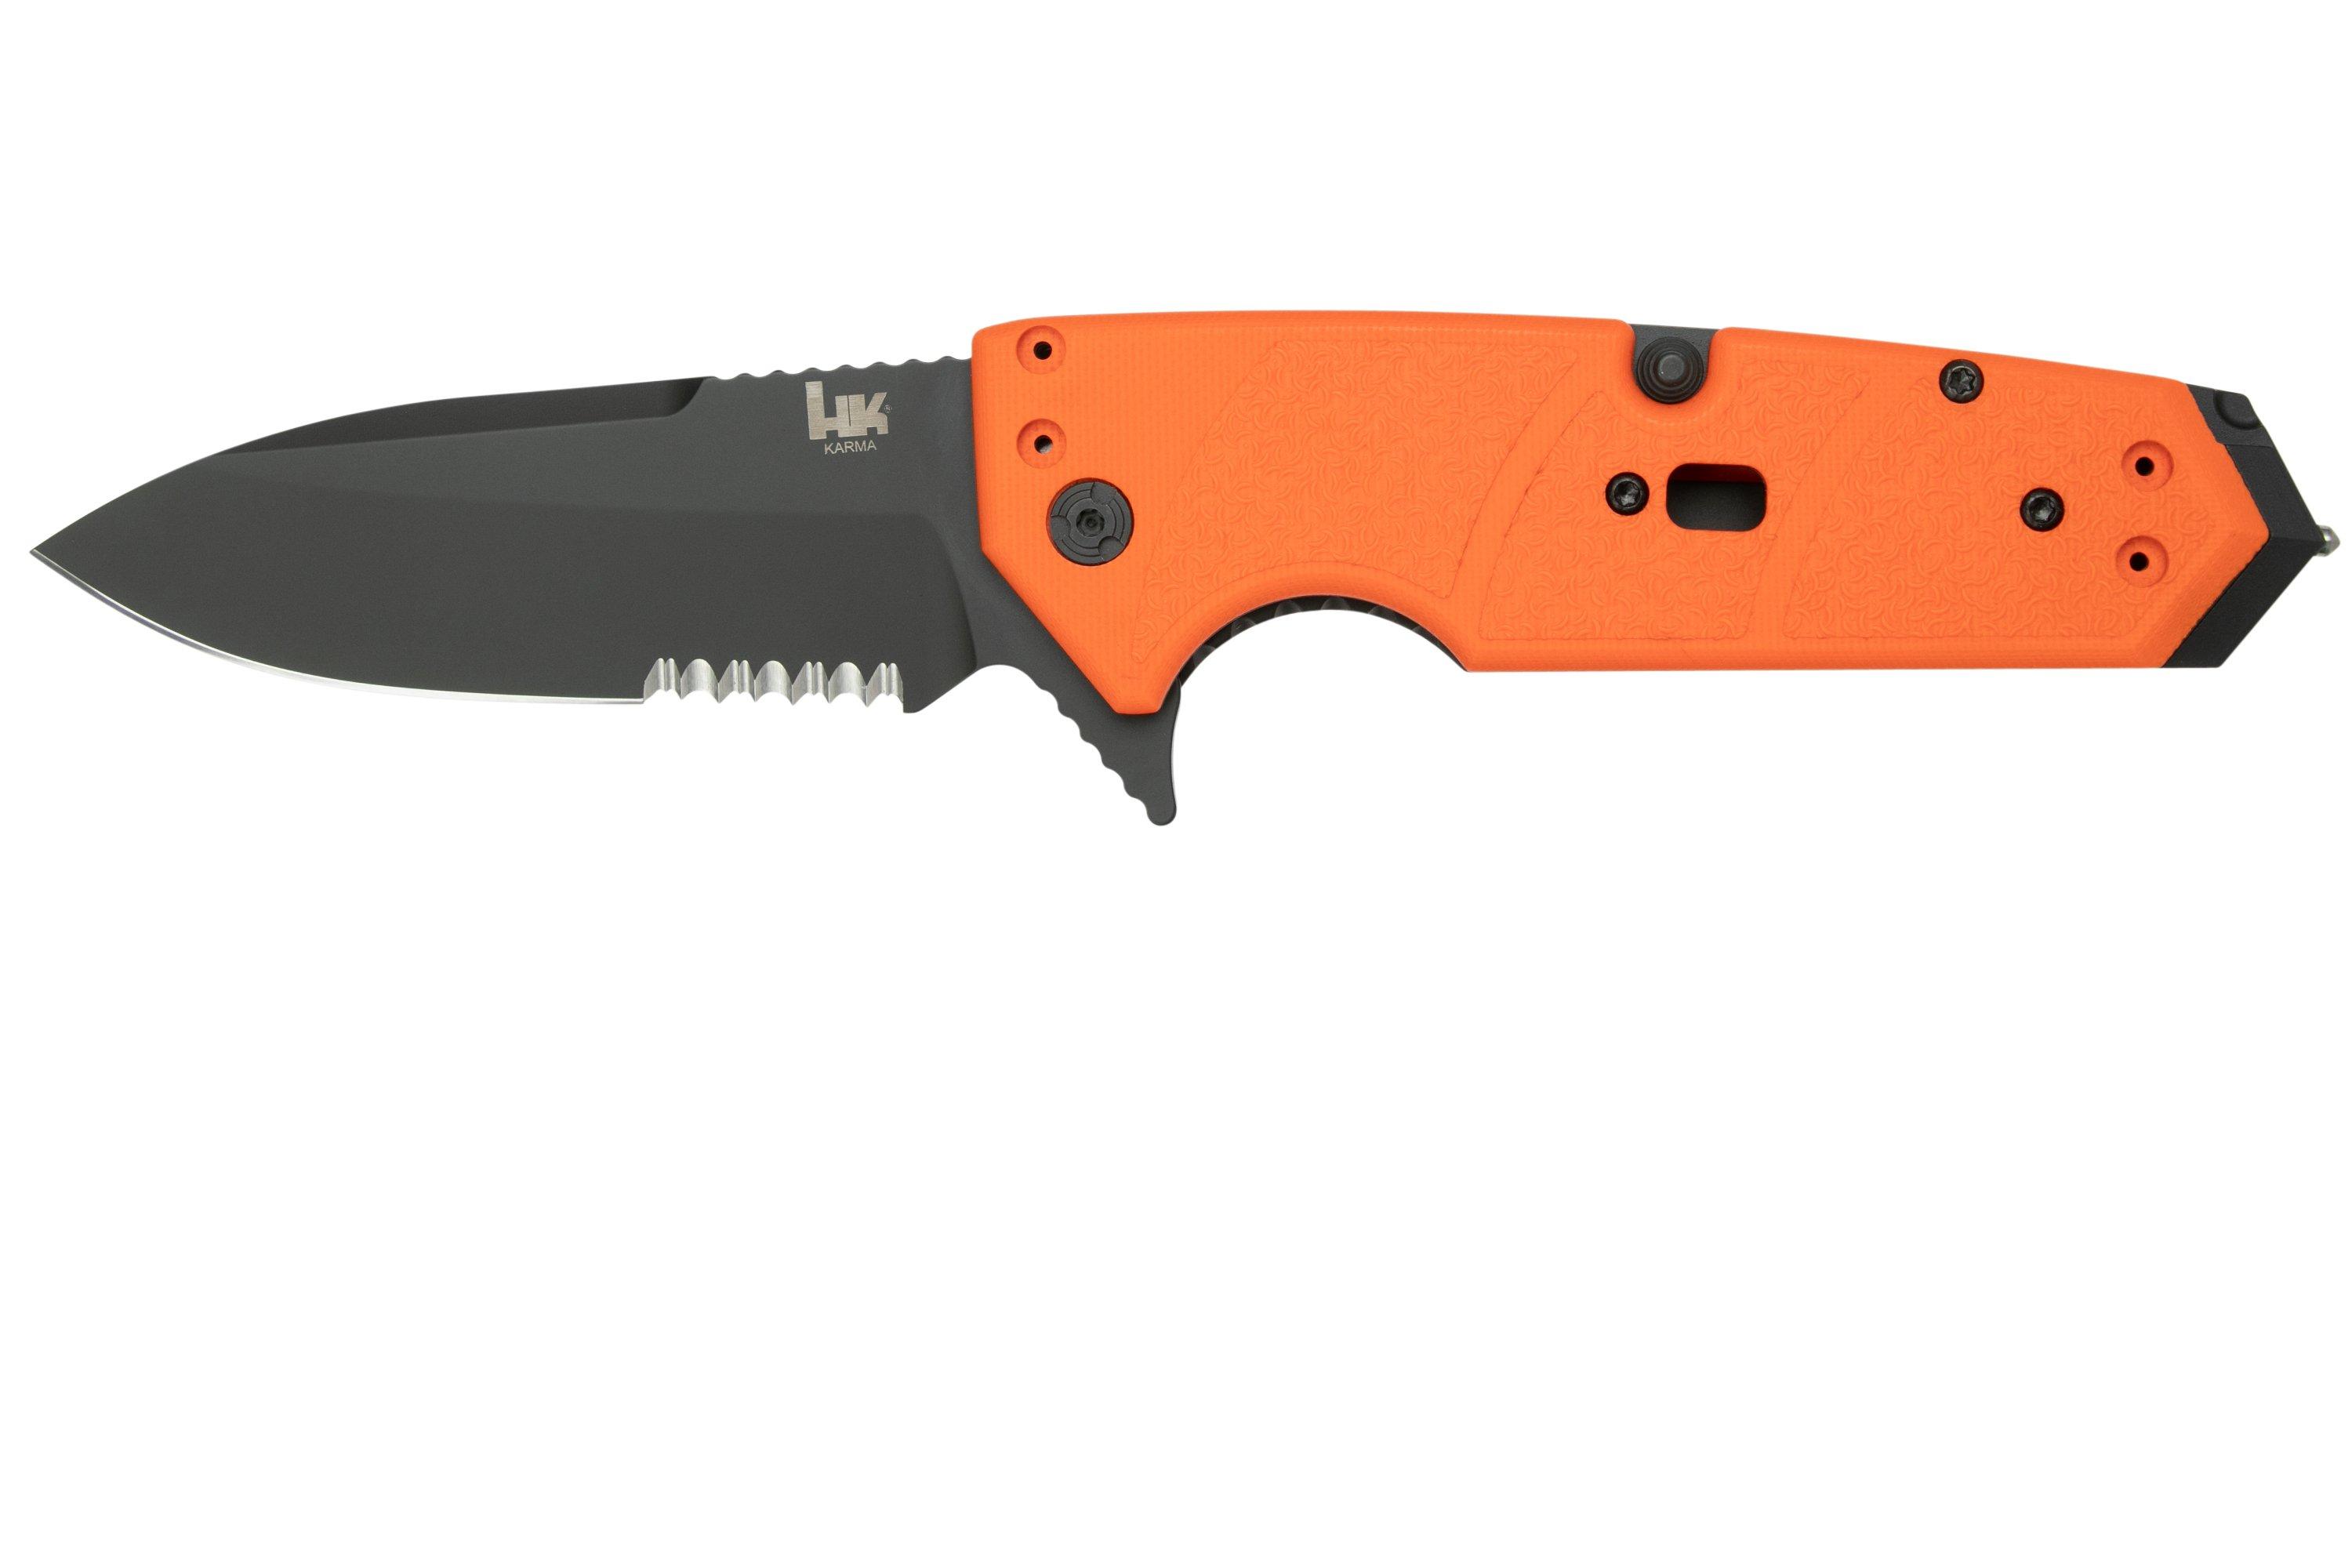 Heckler & Koch Karma 54214 Orange, pocket knife